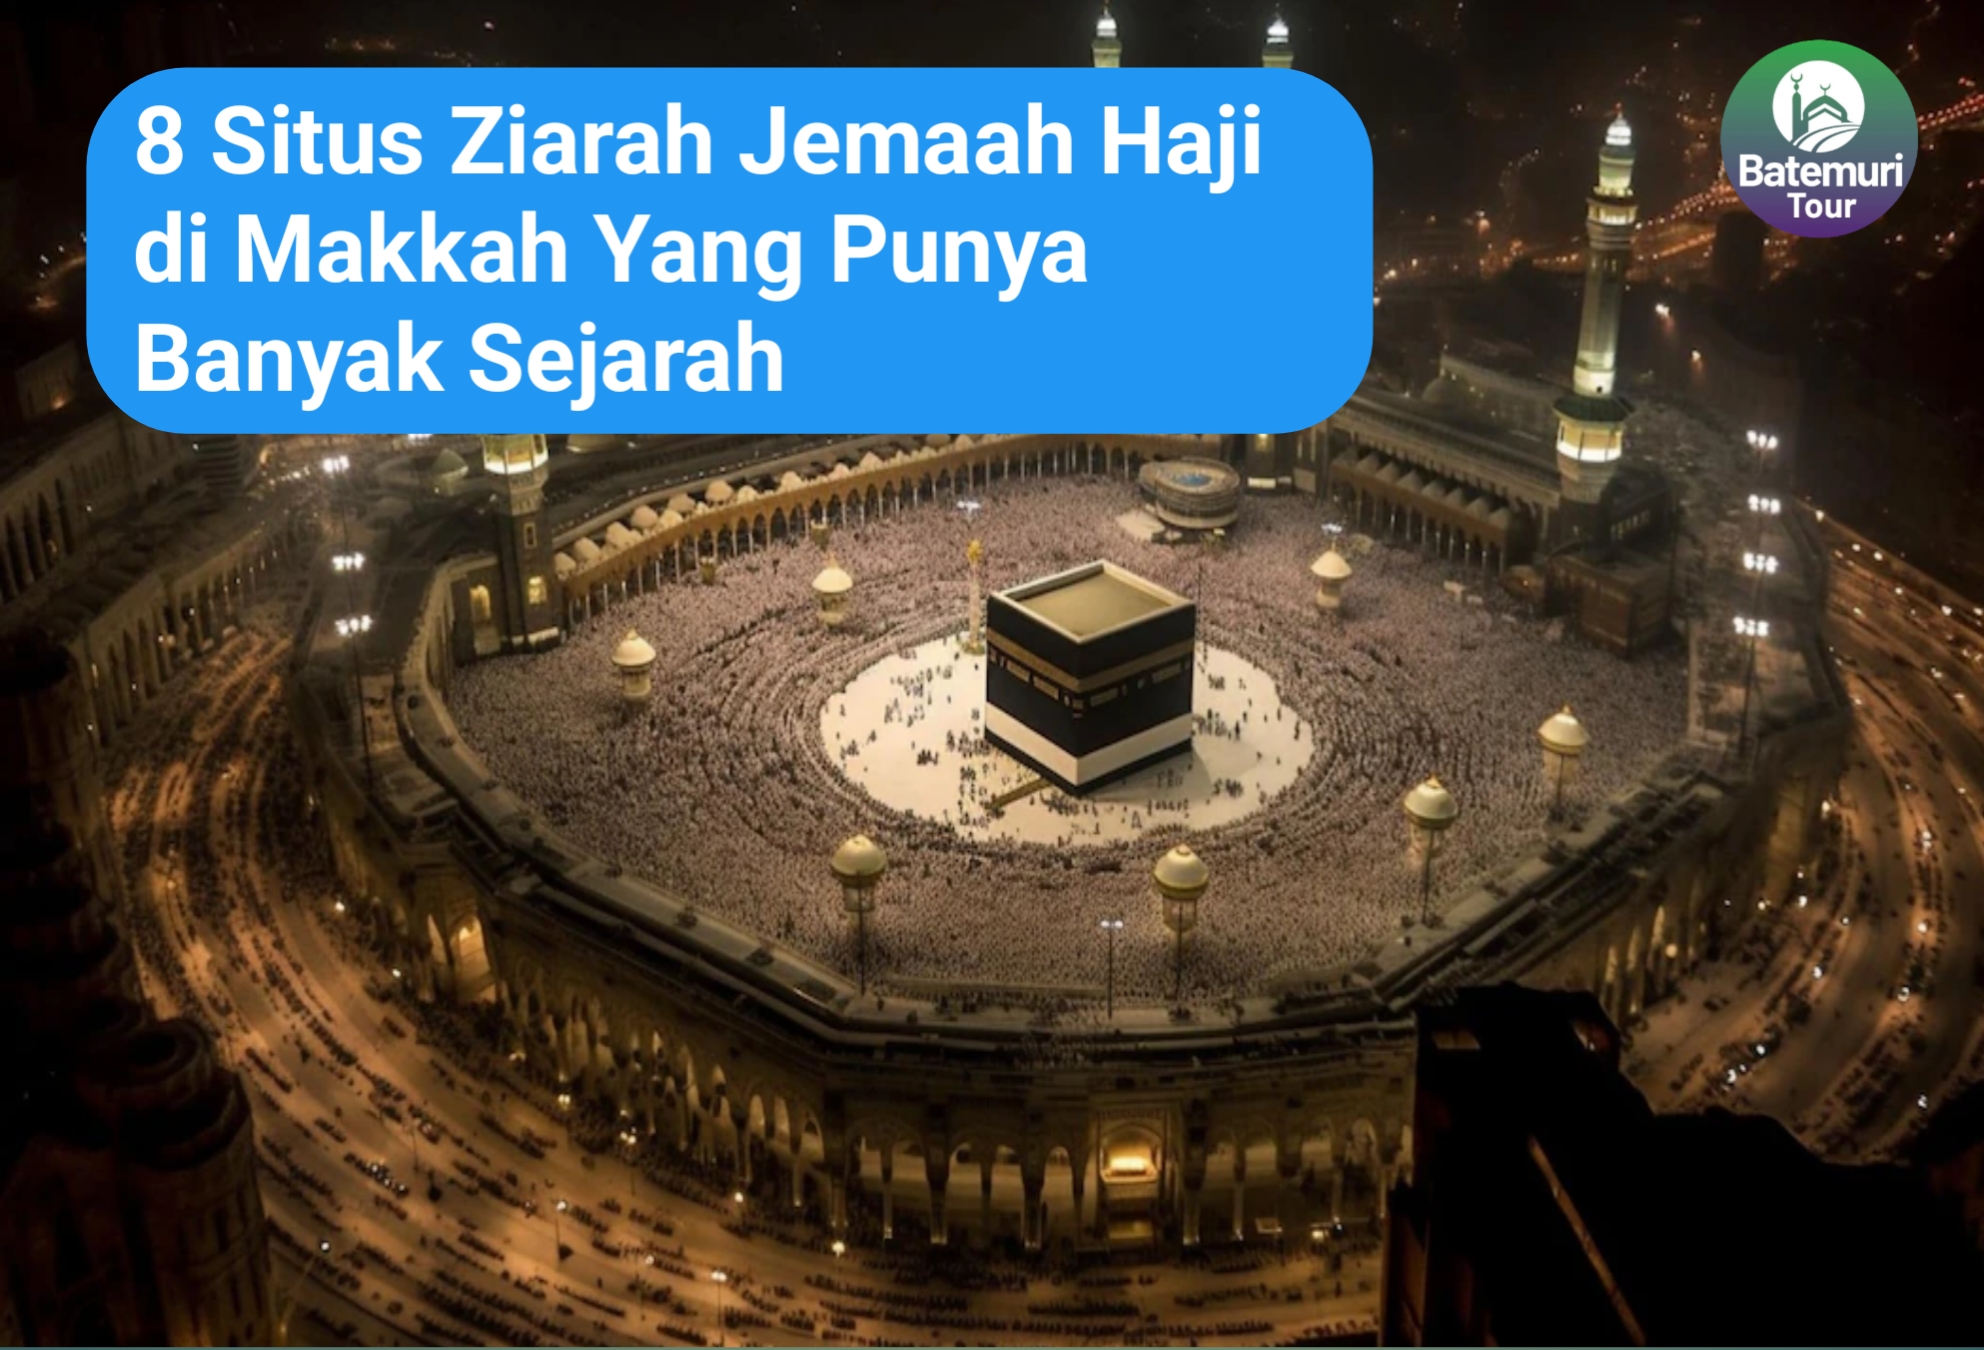 8 Situs Ziarah Jemaah Haji di Makkah yang Punya Banyak Sejarah 